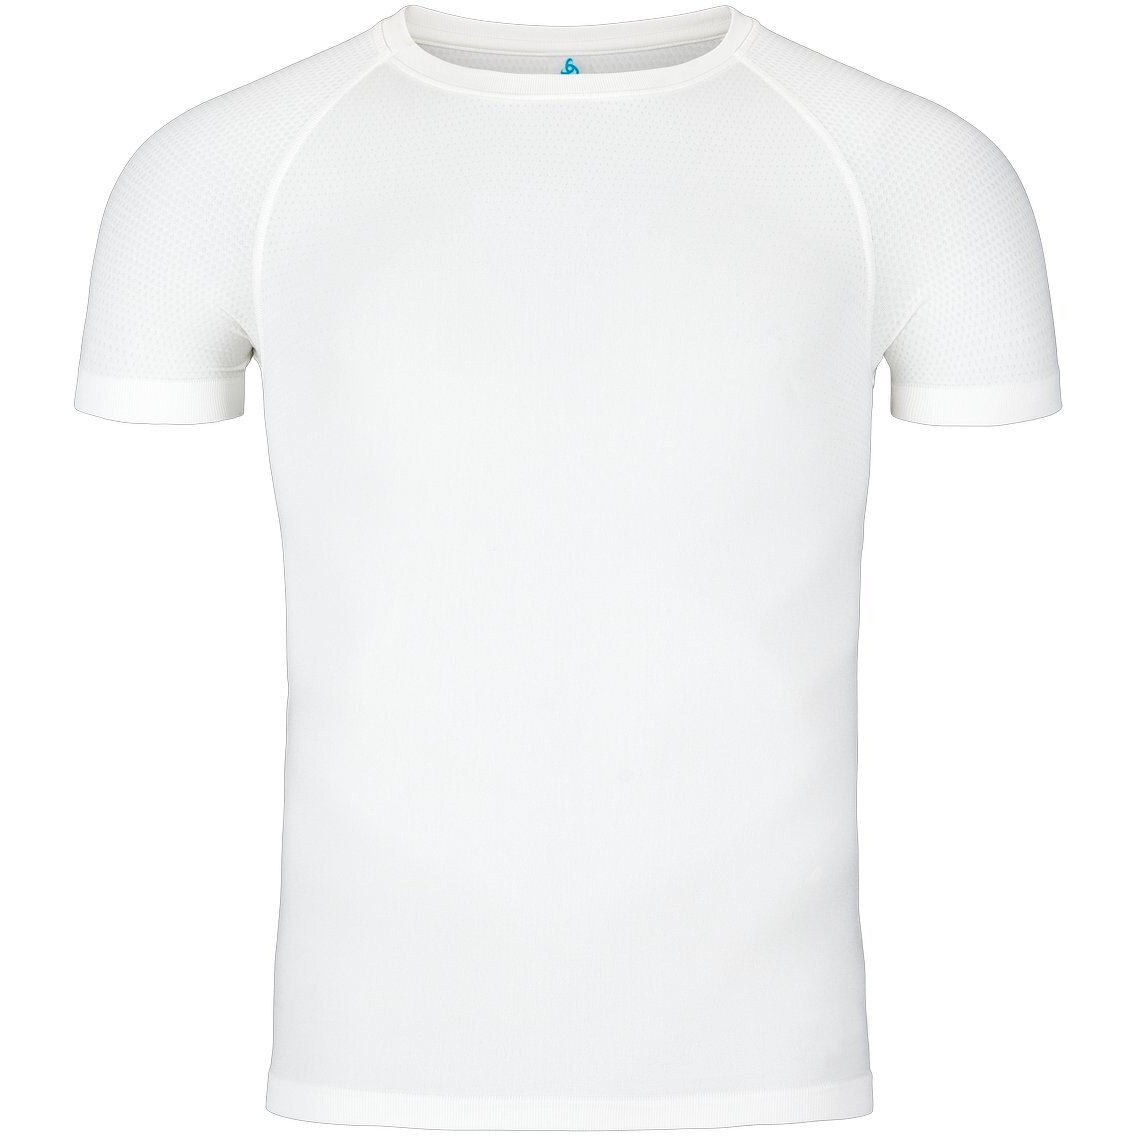 Produktbild von Odlo Performance Light Kurzarm-Unterhemd Herren - weiß